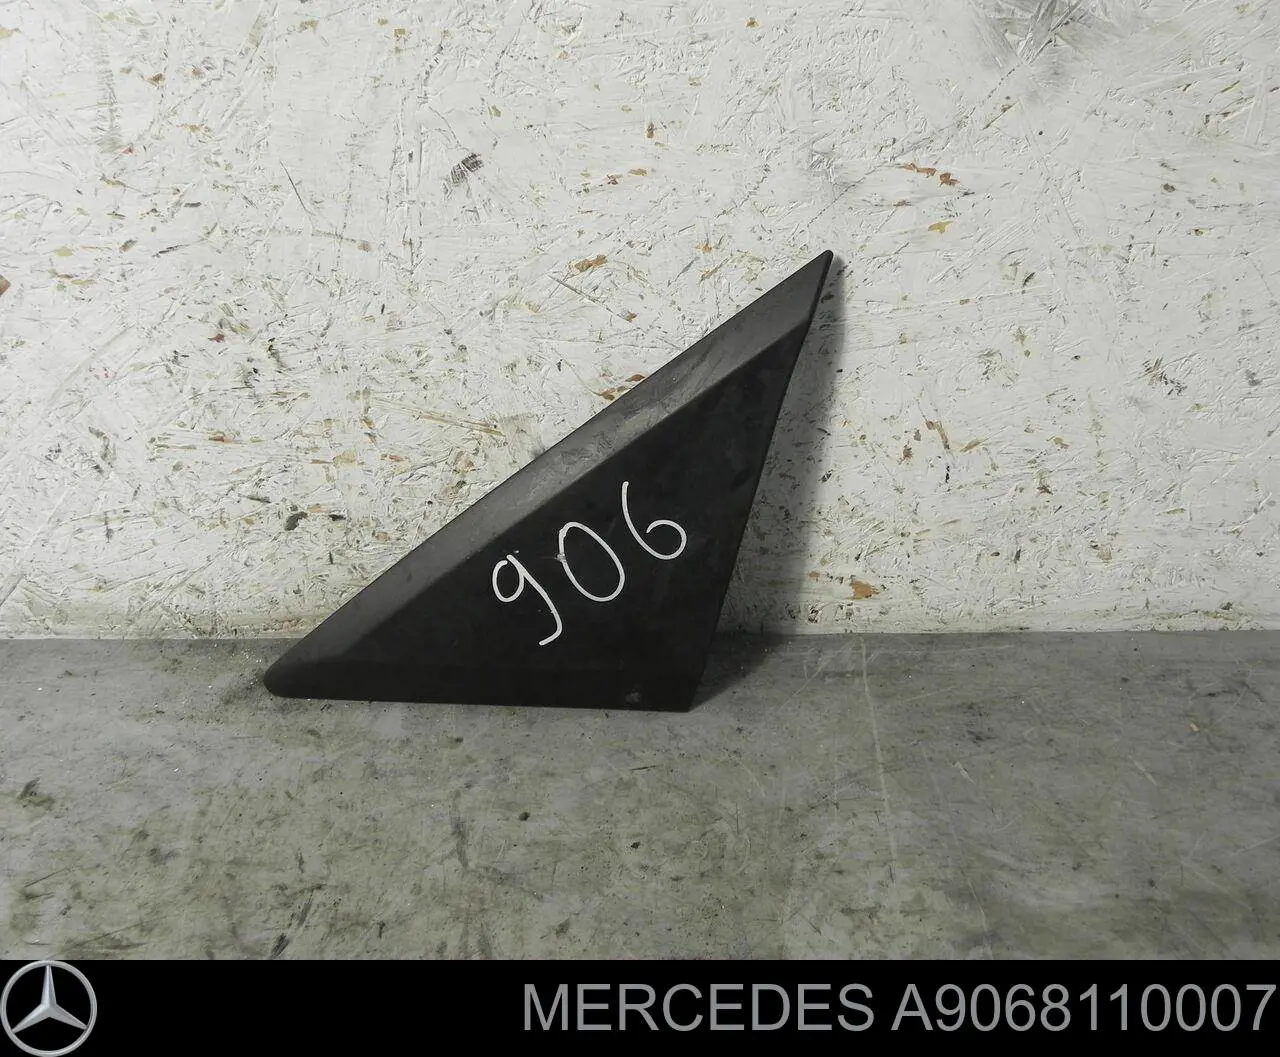 A9068110007 Mercedes placa sobreposta (tampa do espelho de retrovisão esquerdo)